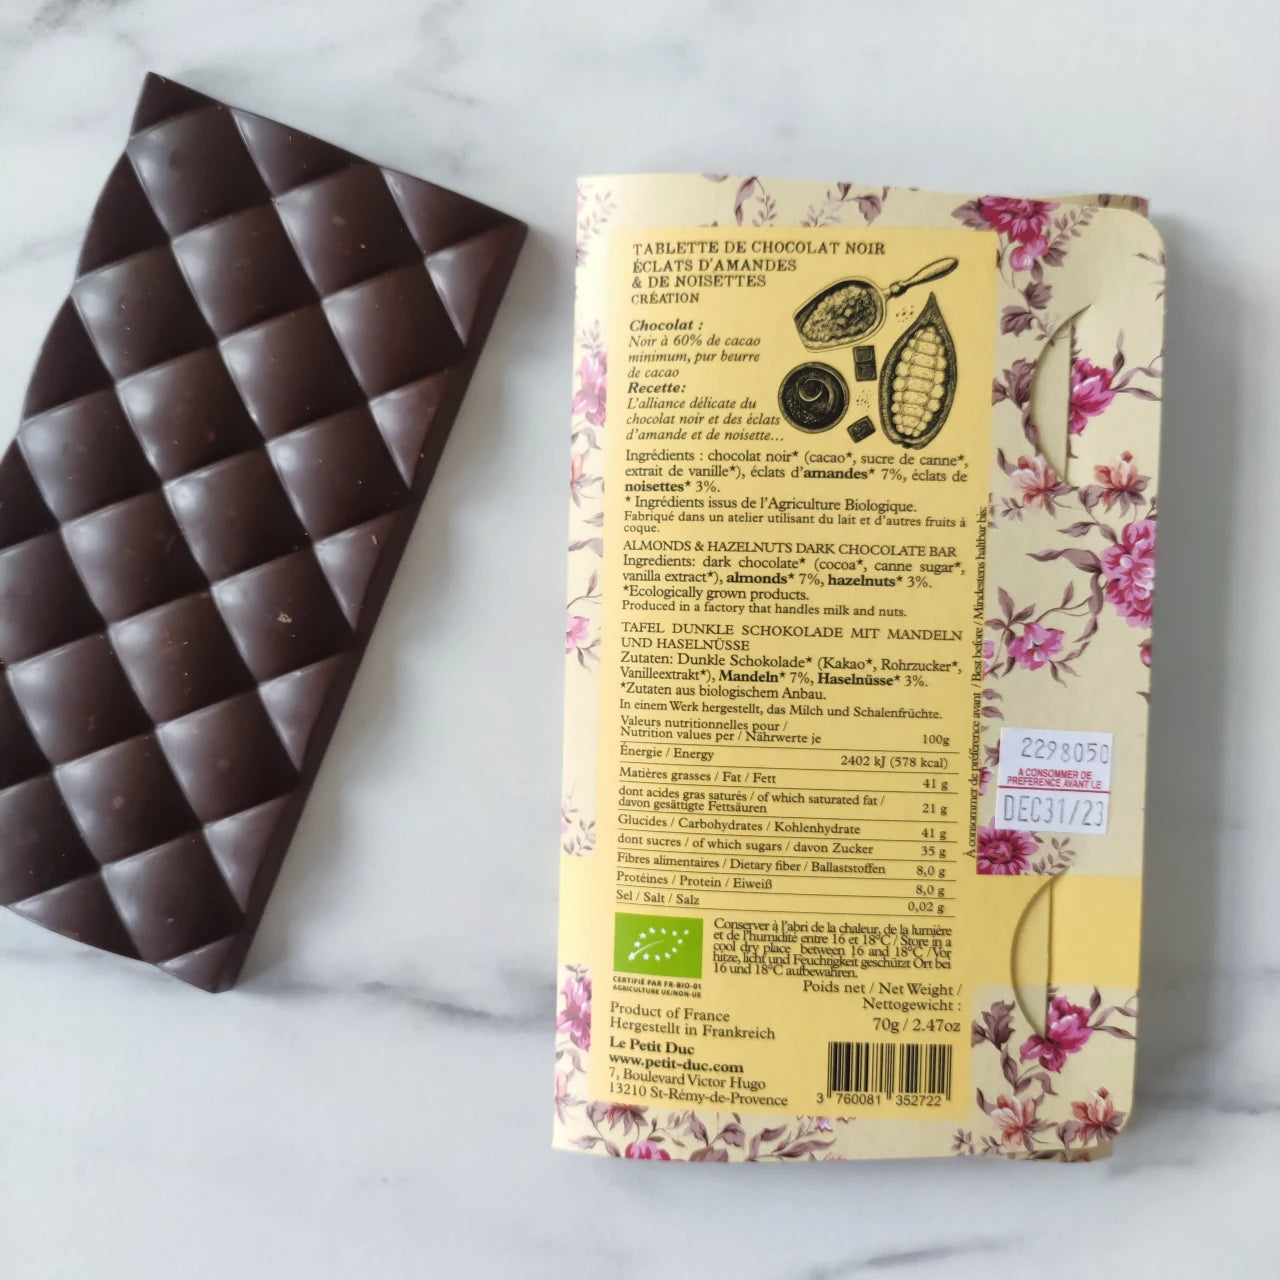 chocolat noir, le petit duc, amandes, 60% de cacao, tablette chocolat, idée cadeau chocolat, cadeau chocolat, chocolat du monde , chocolat original